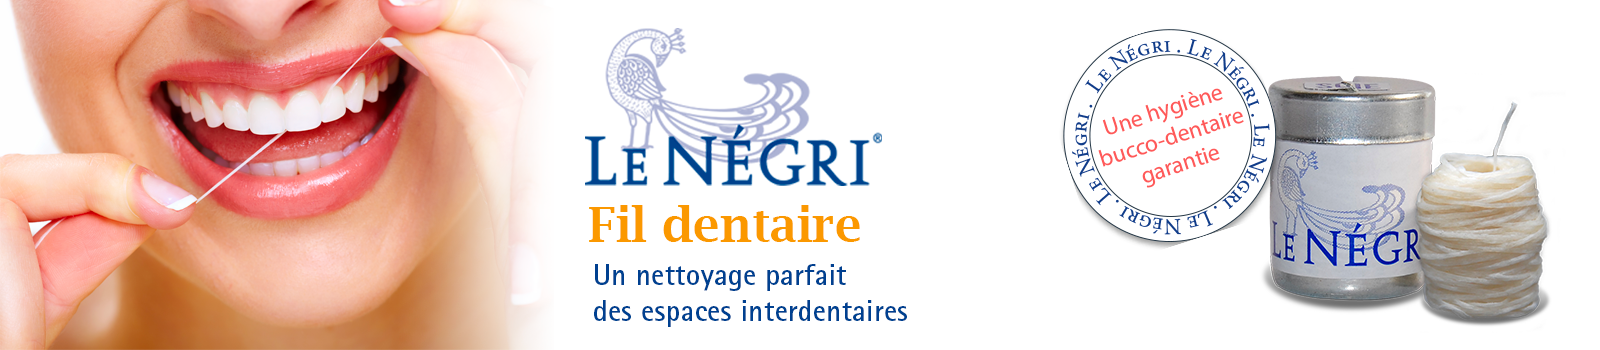 Bandeau promotionnel Le Négri, fil dentaire